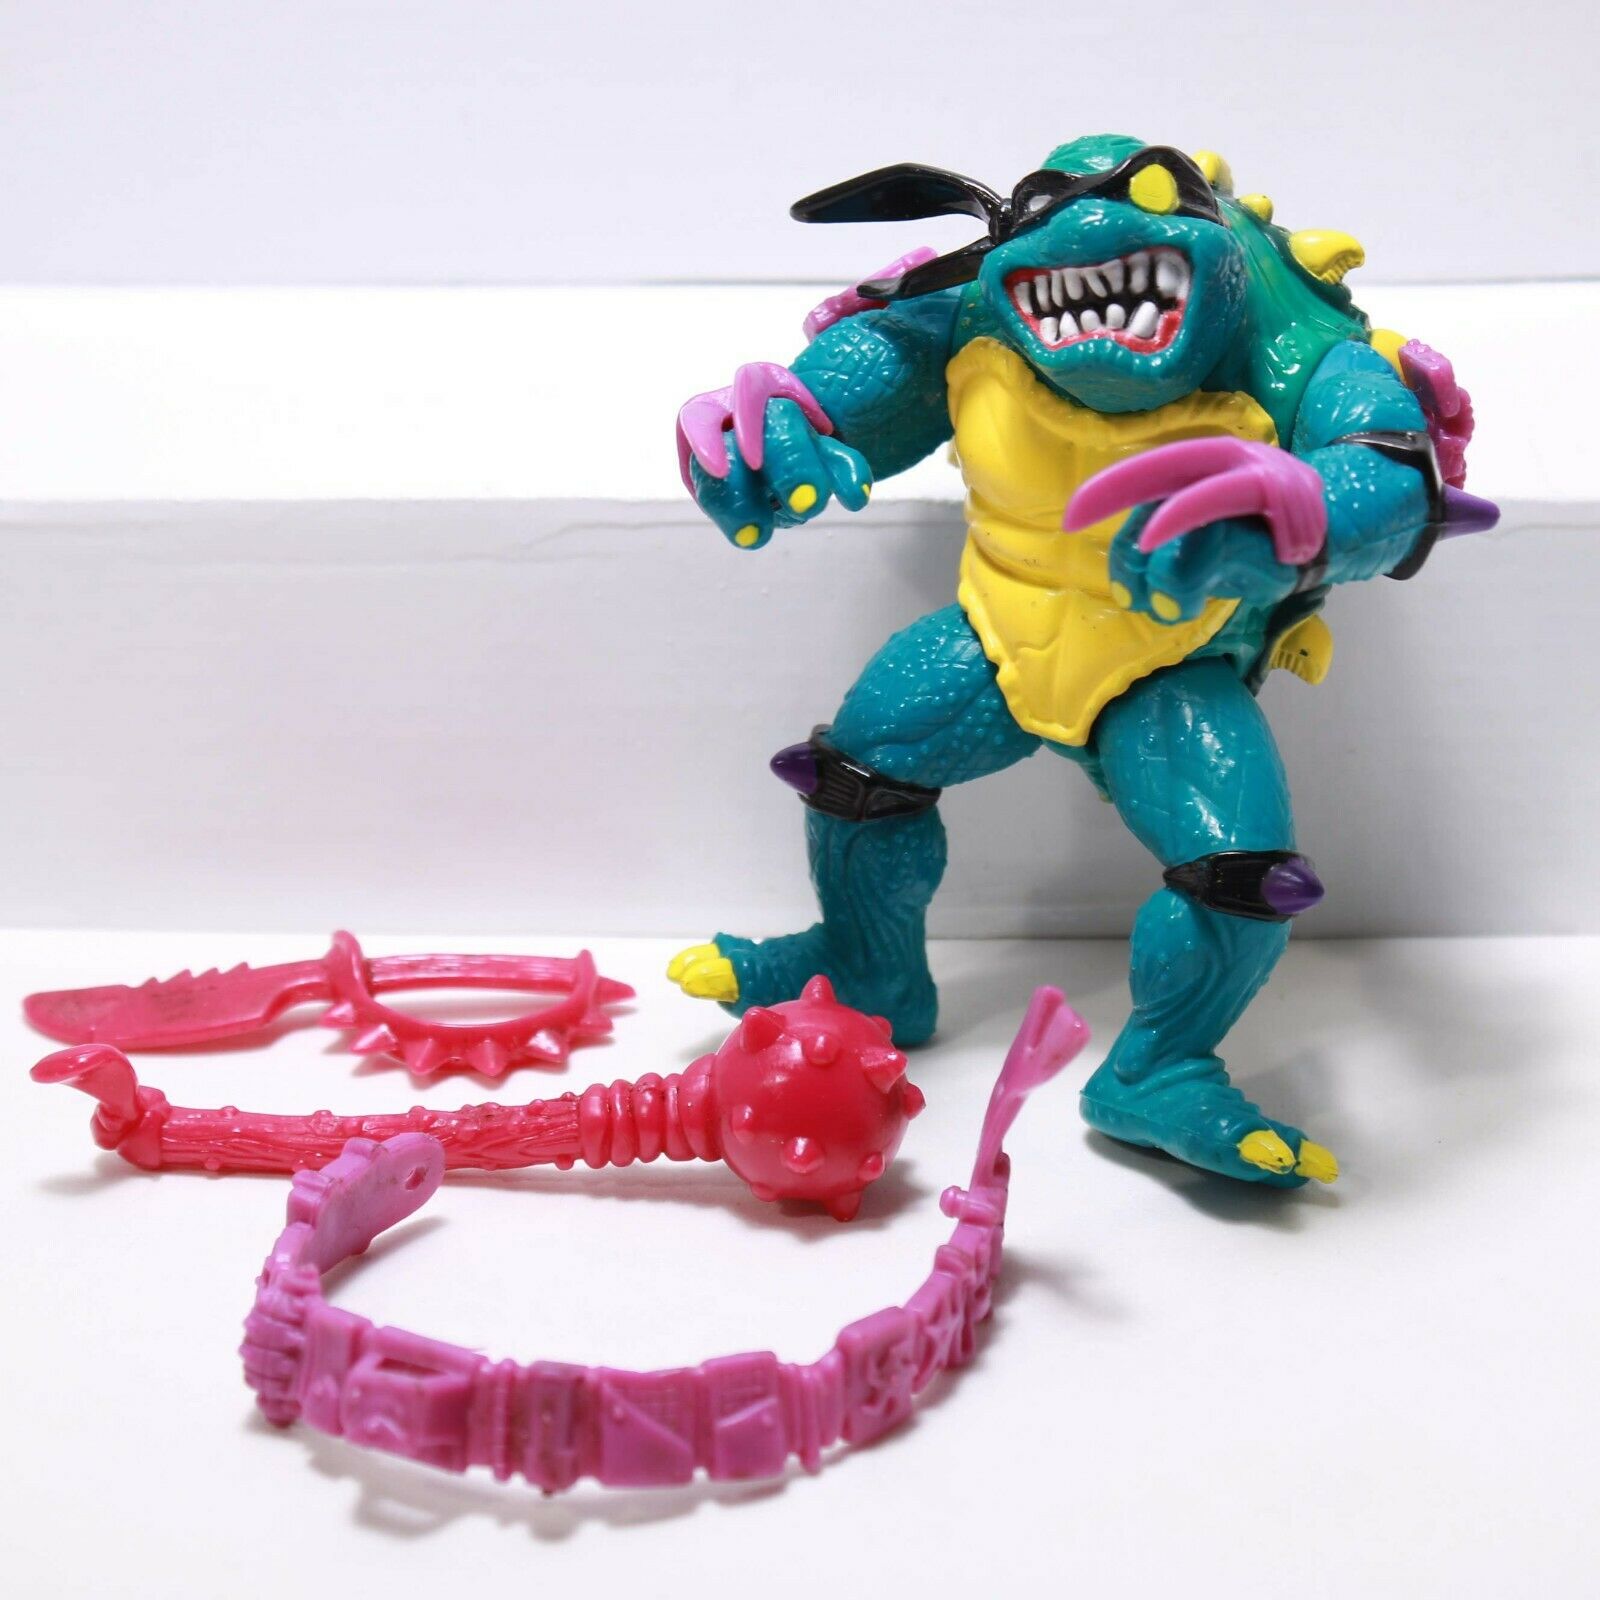 TMNT - Slash - 1990 Playmates - Teenage Mutant Ninja Turtles Action Figure